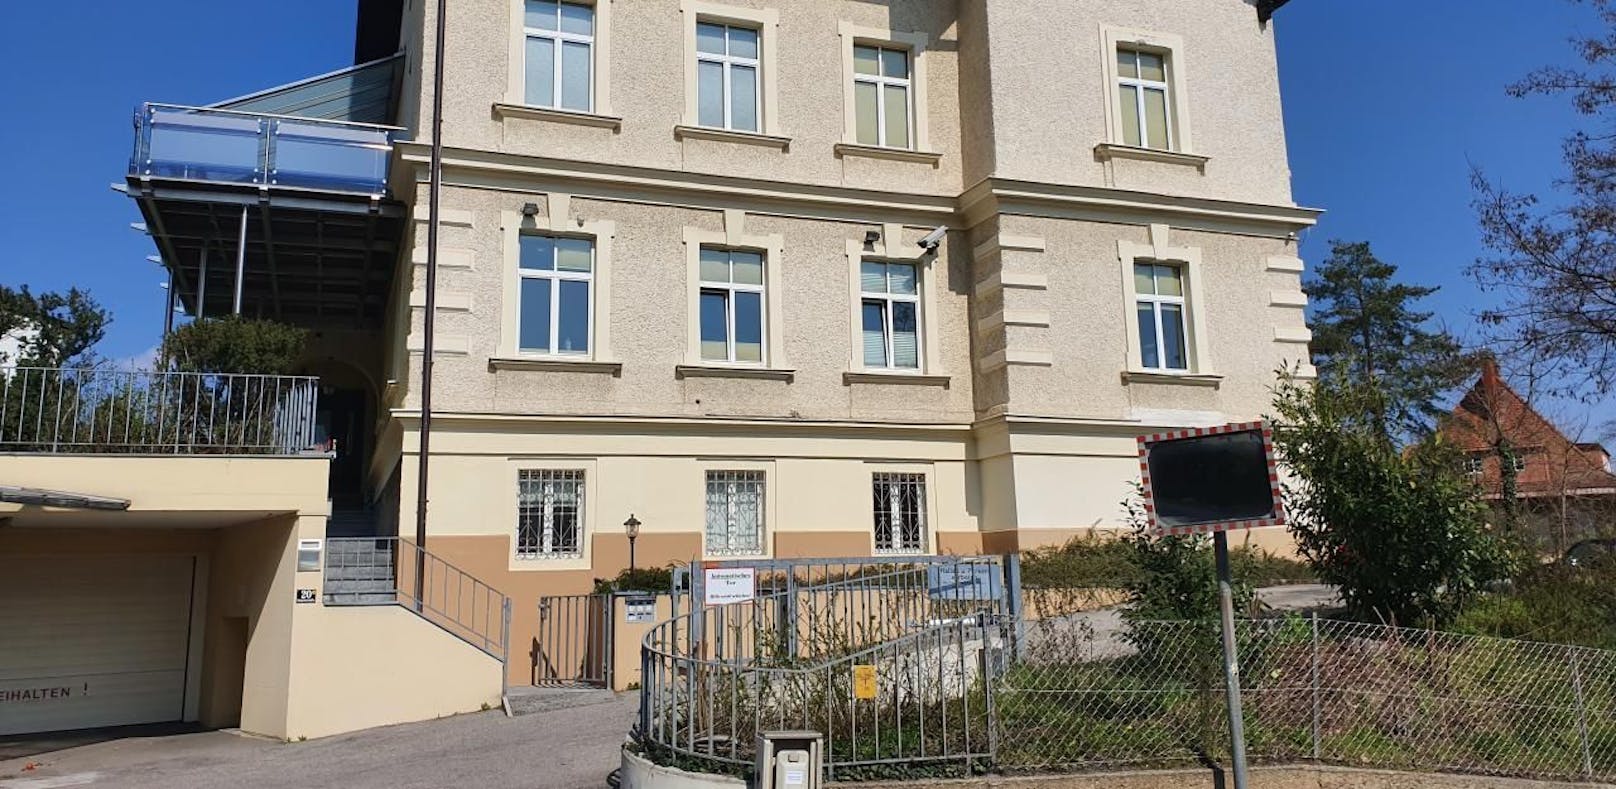 Die Zeitung berichtete über eine Hausdurchsuchung in diesem Studentenheim-Haus in Linz, die es nie gab.